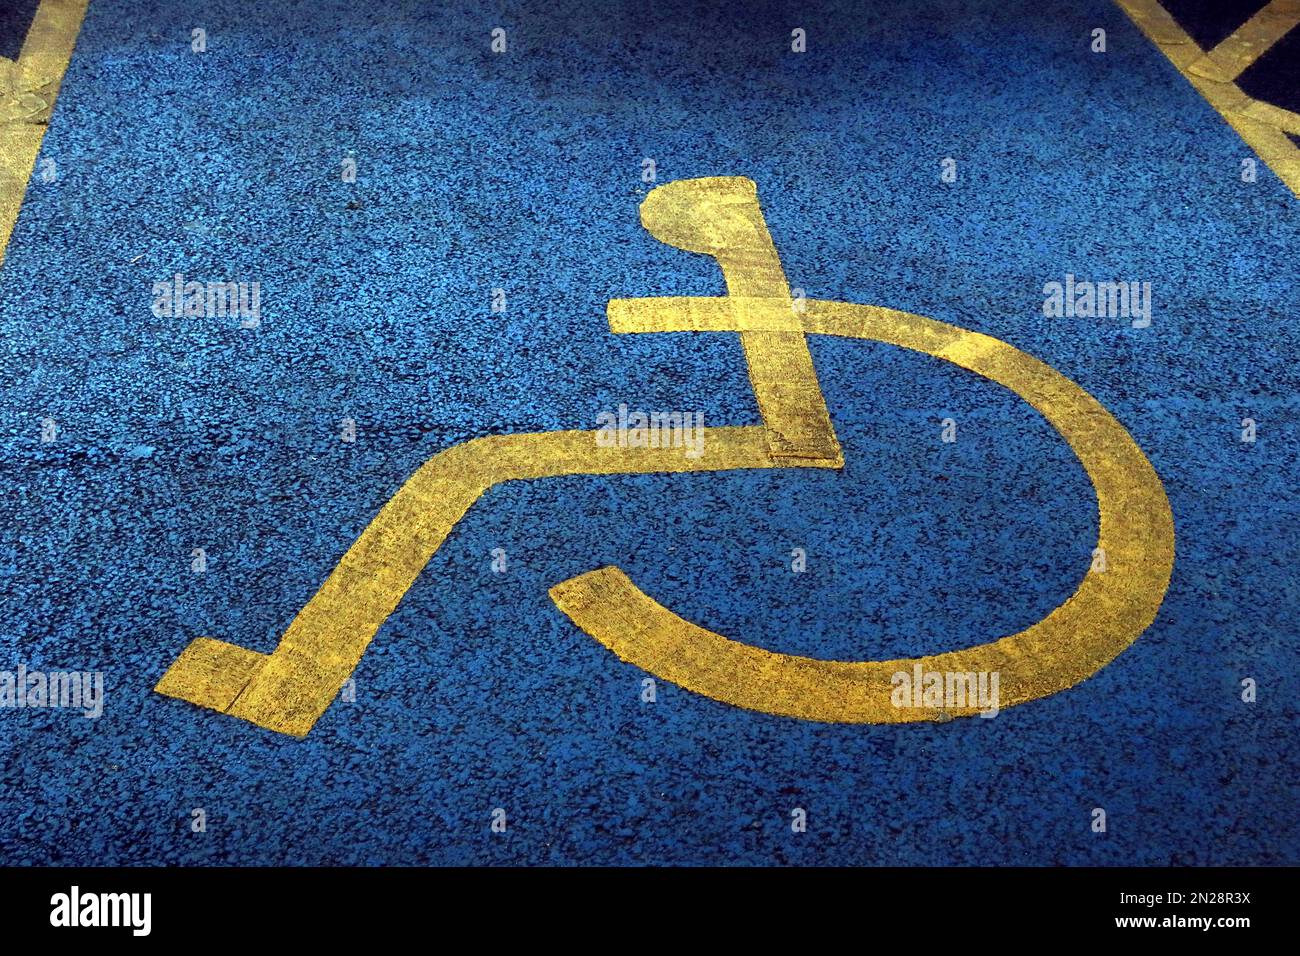 Strukturierte Oberfläche auf blau und gelb lackiertem, Behindertenparkplatz NCP Stockport Stockfoto